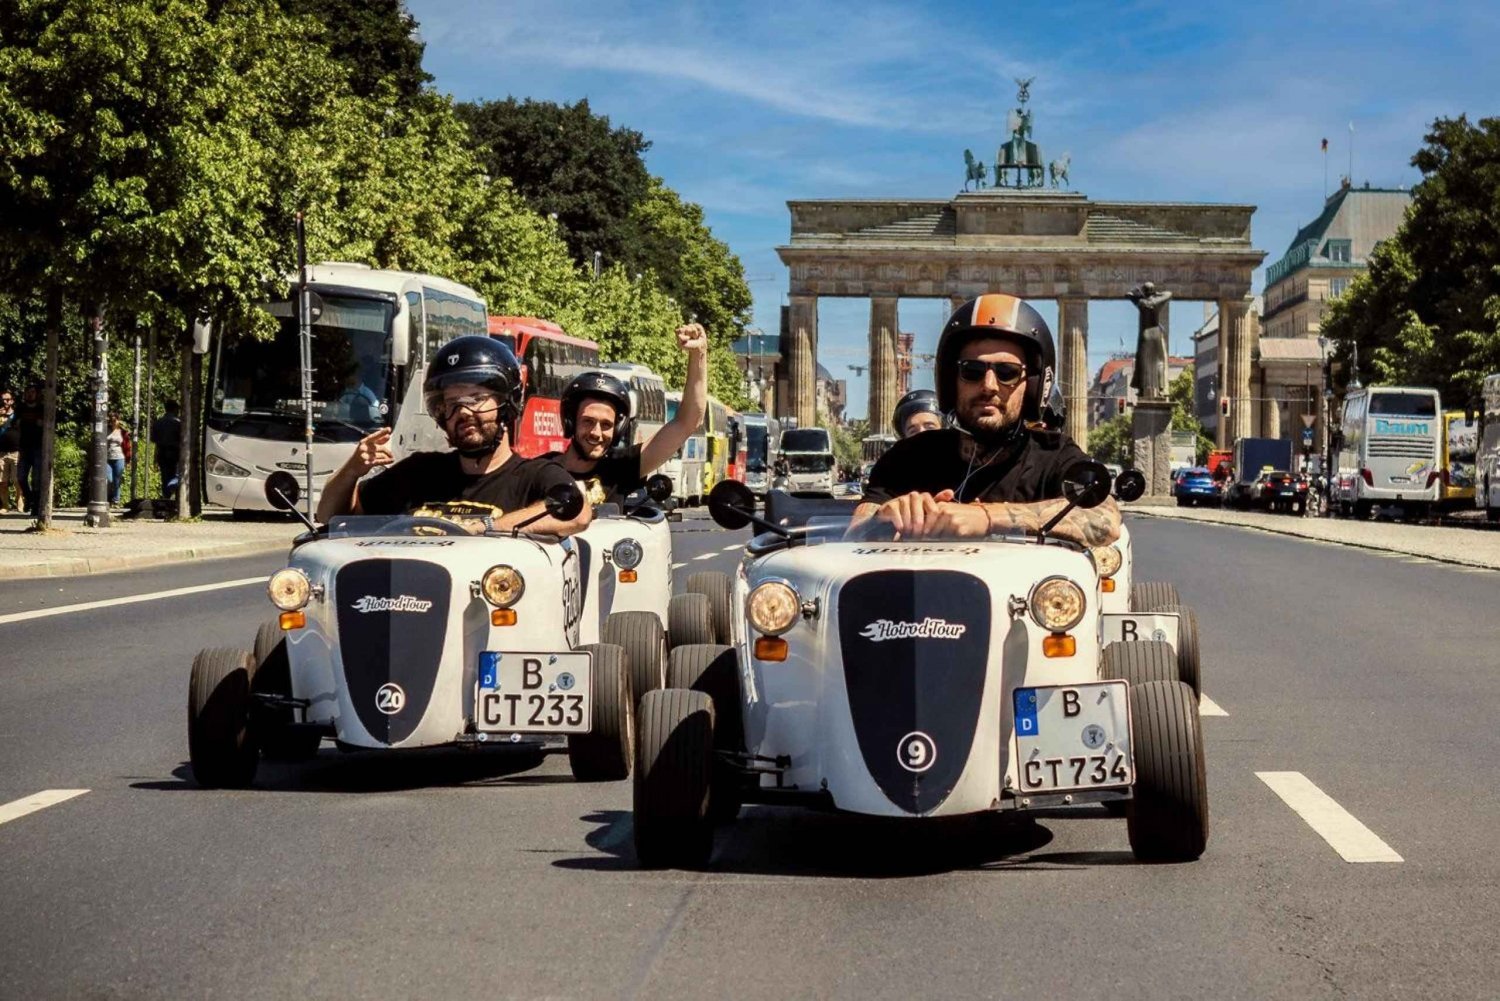 Berlín: Recorrido turístico por la ciudad en un mini bólido